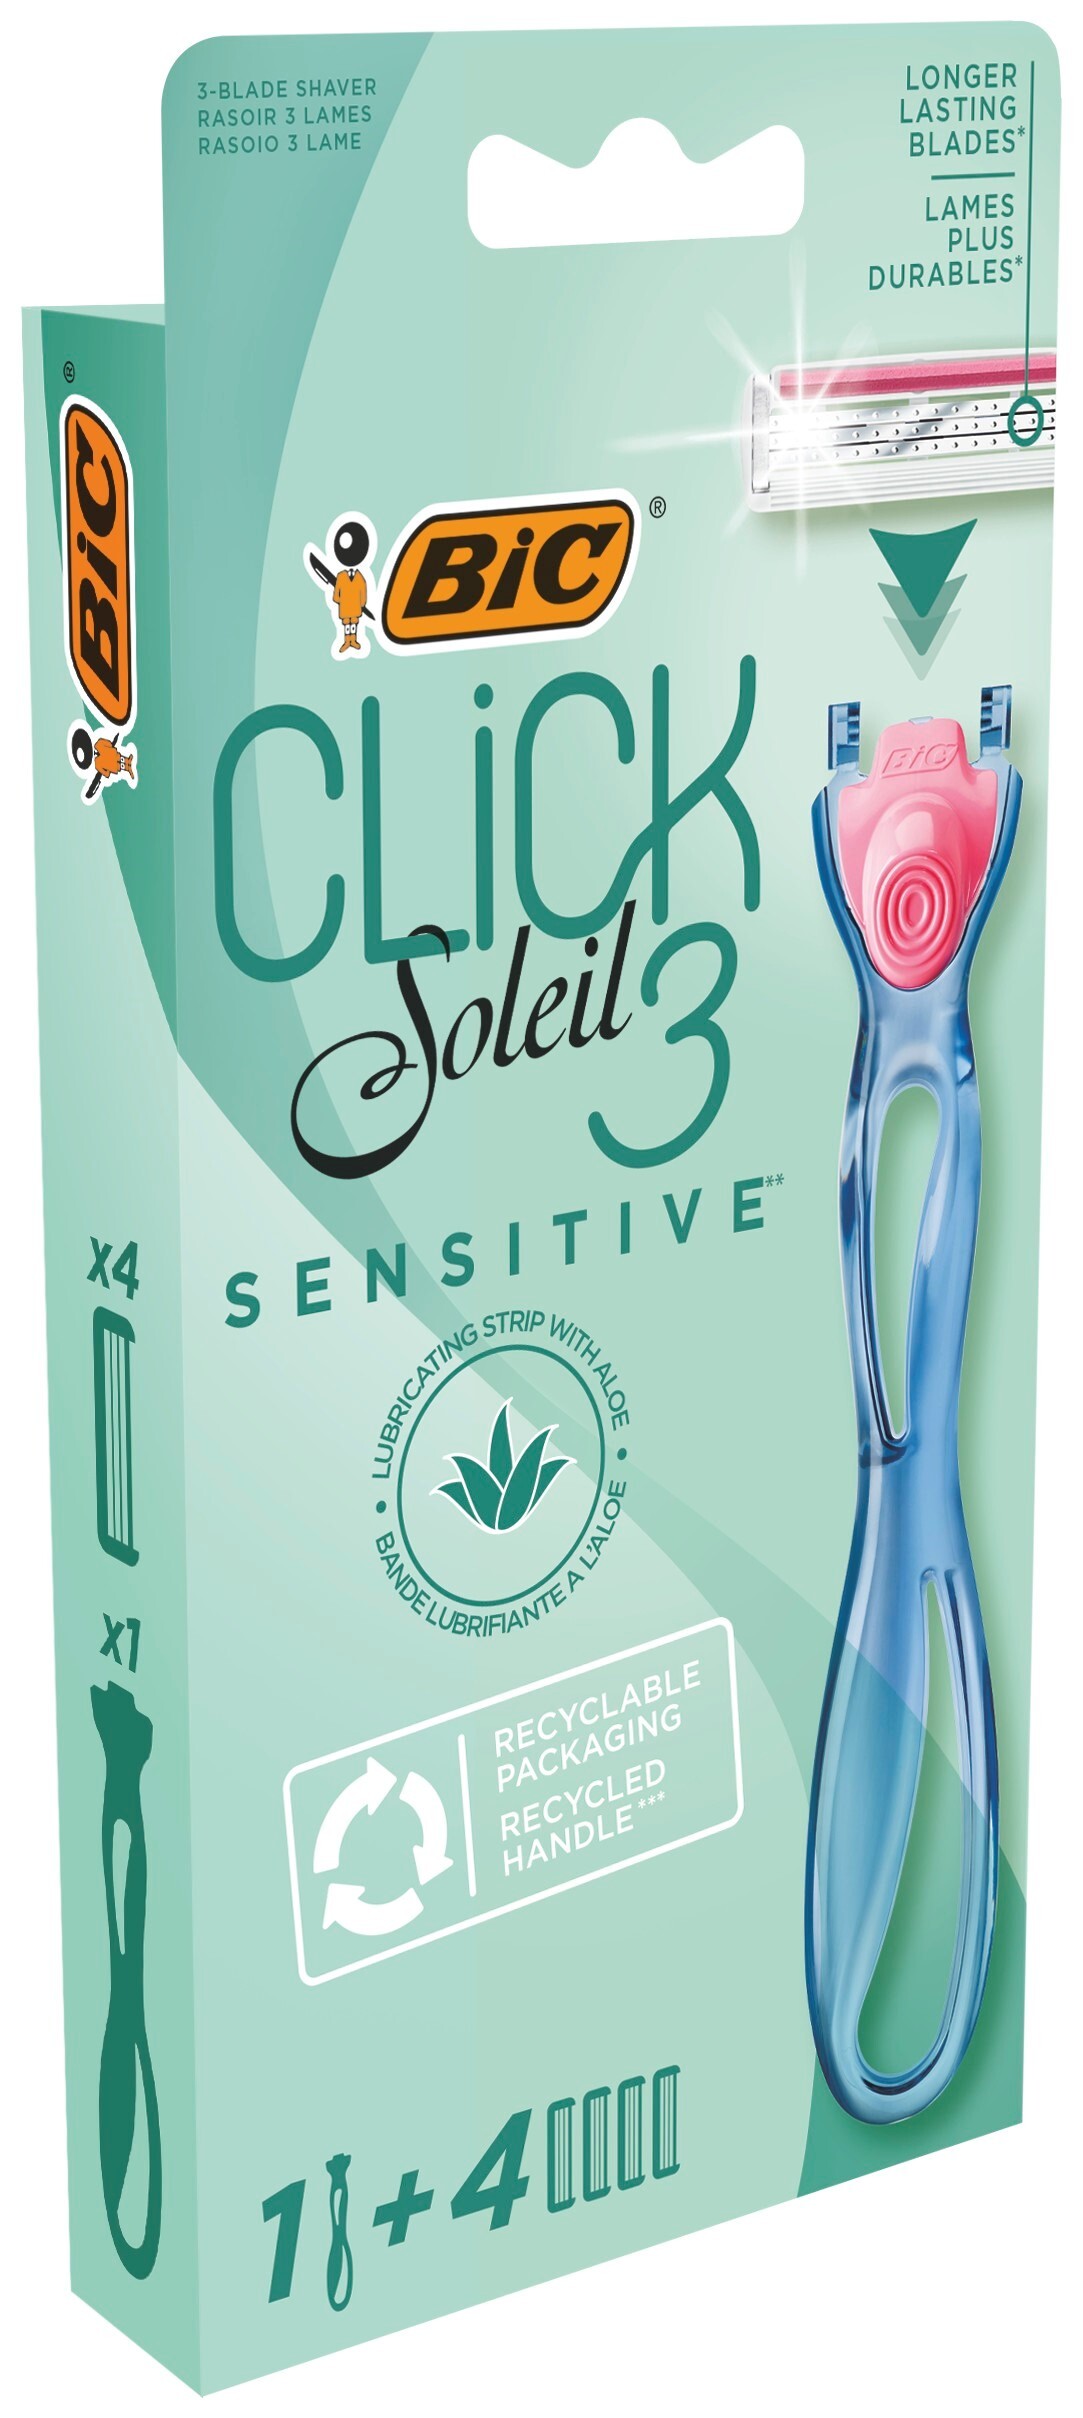 BIC Click Soleil 3 Sensitive Scheermes Set